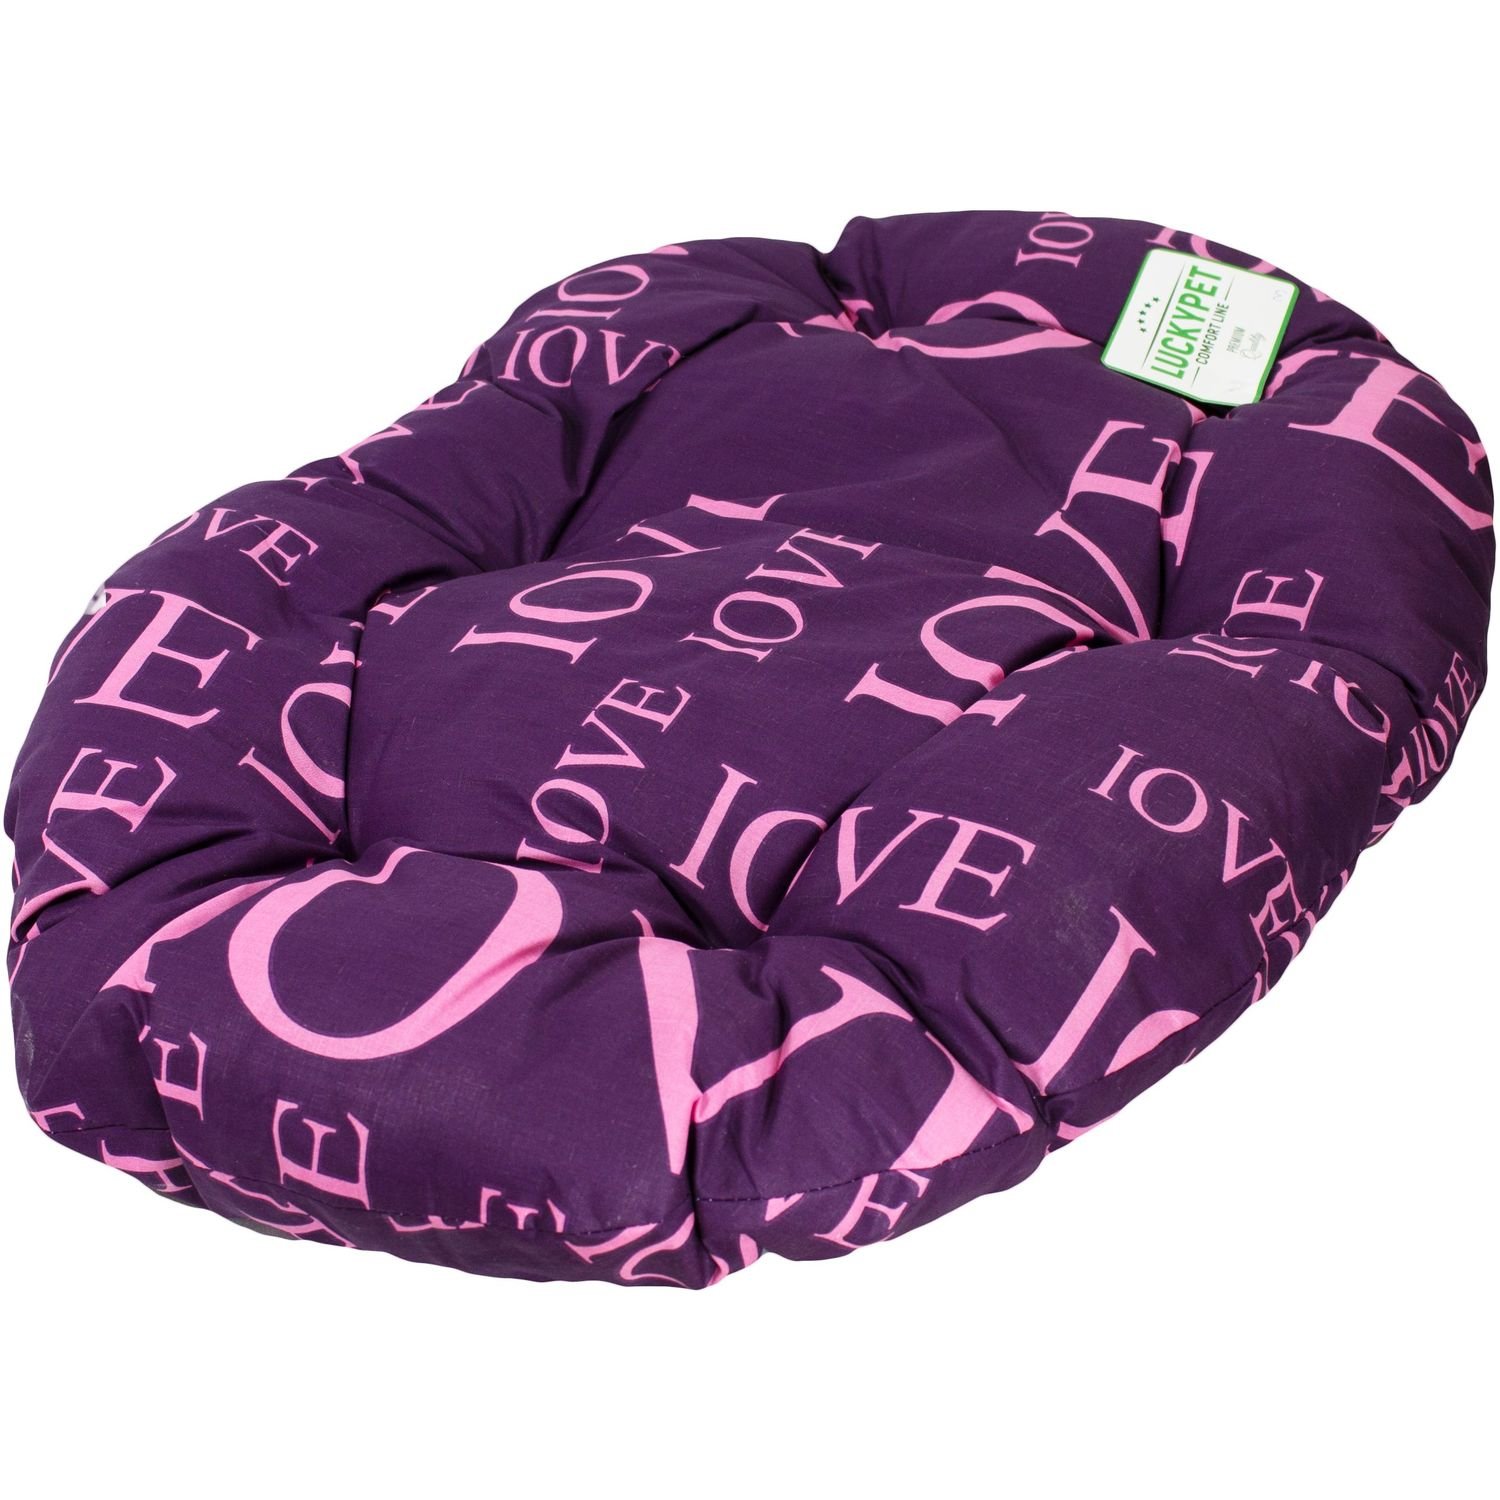 Лежак-подушка Luсky Pet Дрема №4, фиолетовый, 60x90 см - фото 1